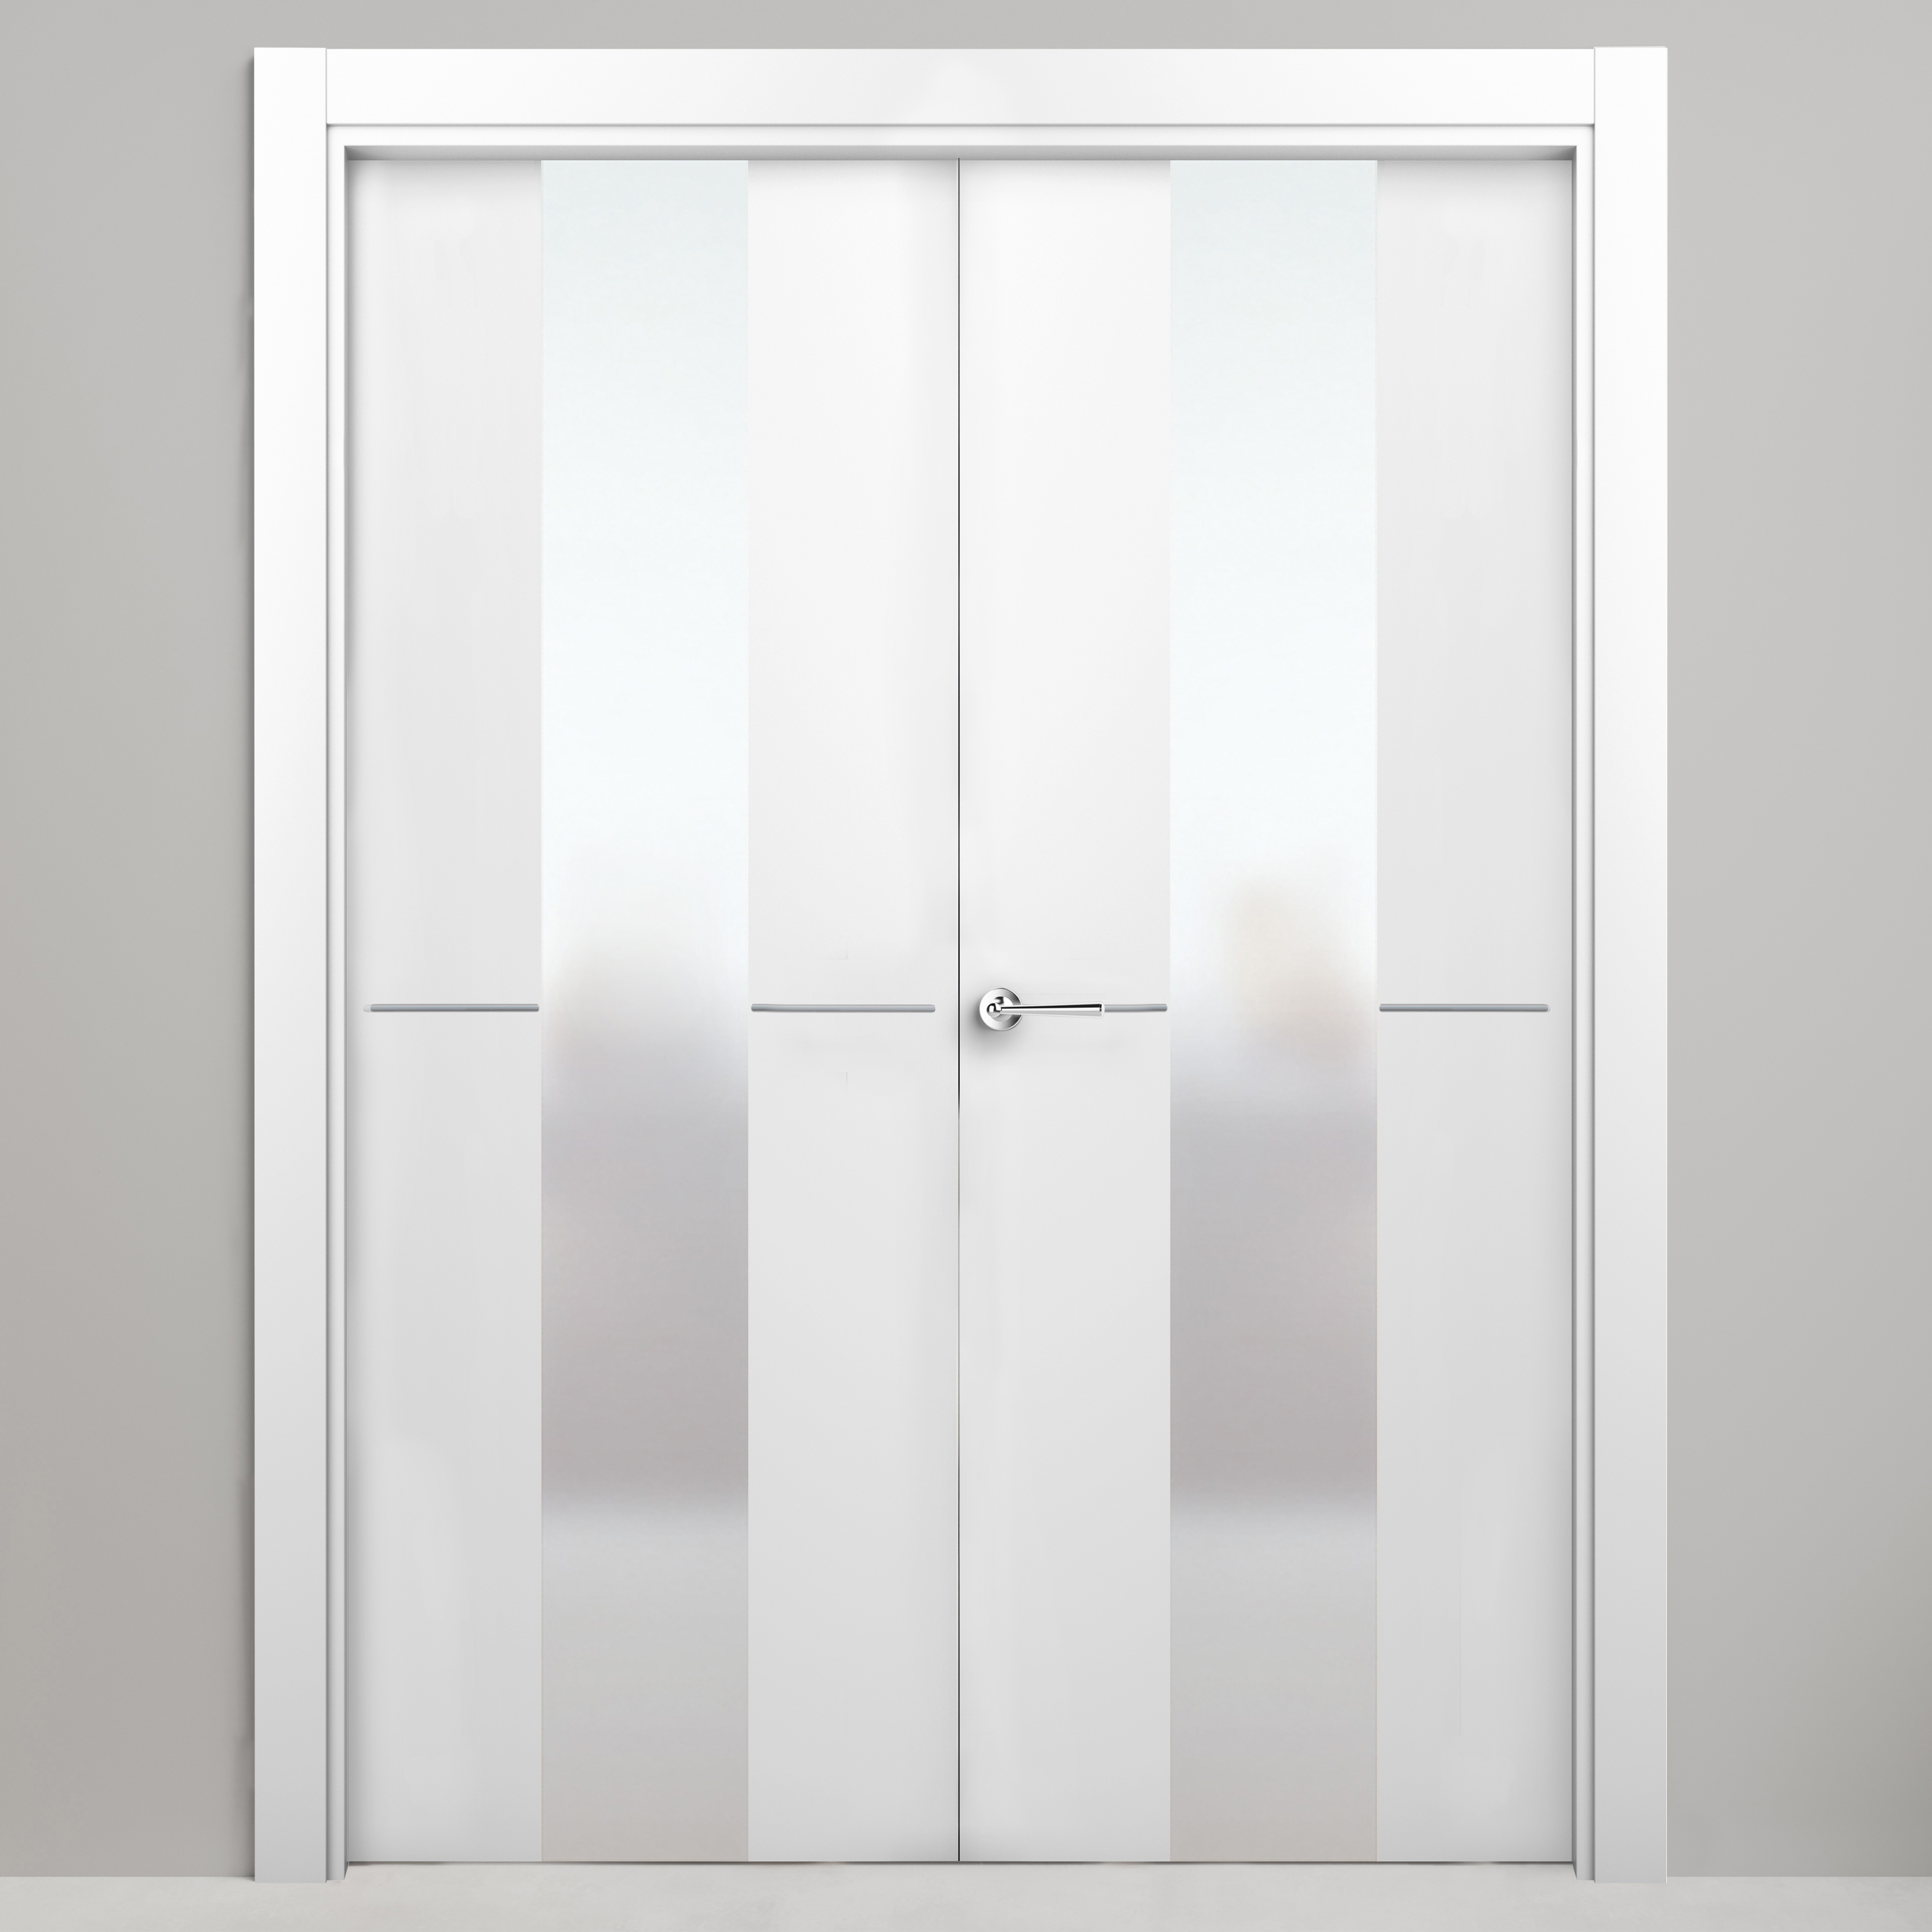 Puerta abatible paris blanca premium apertura izquierda de 125 cm